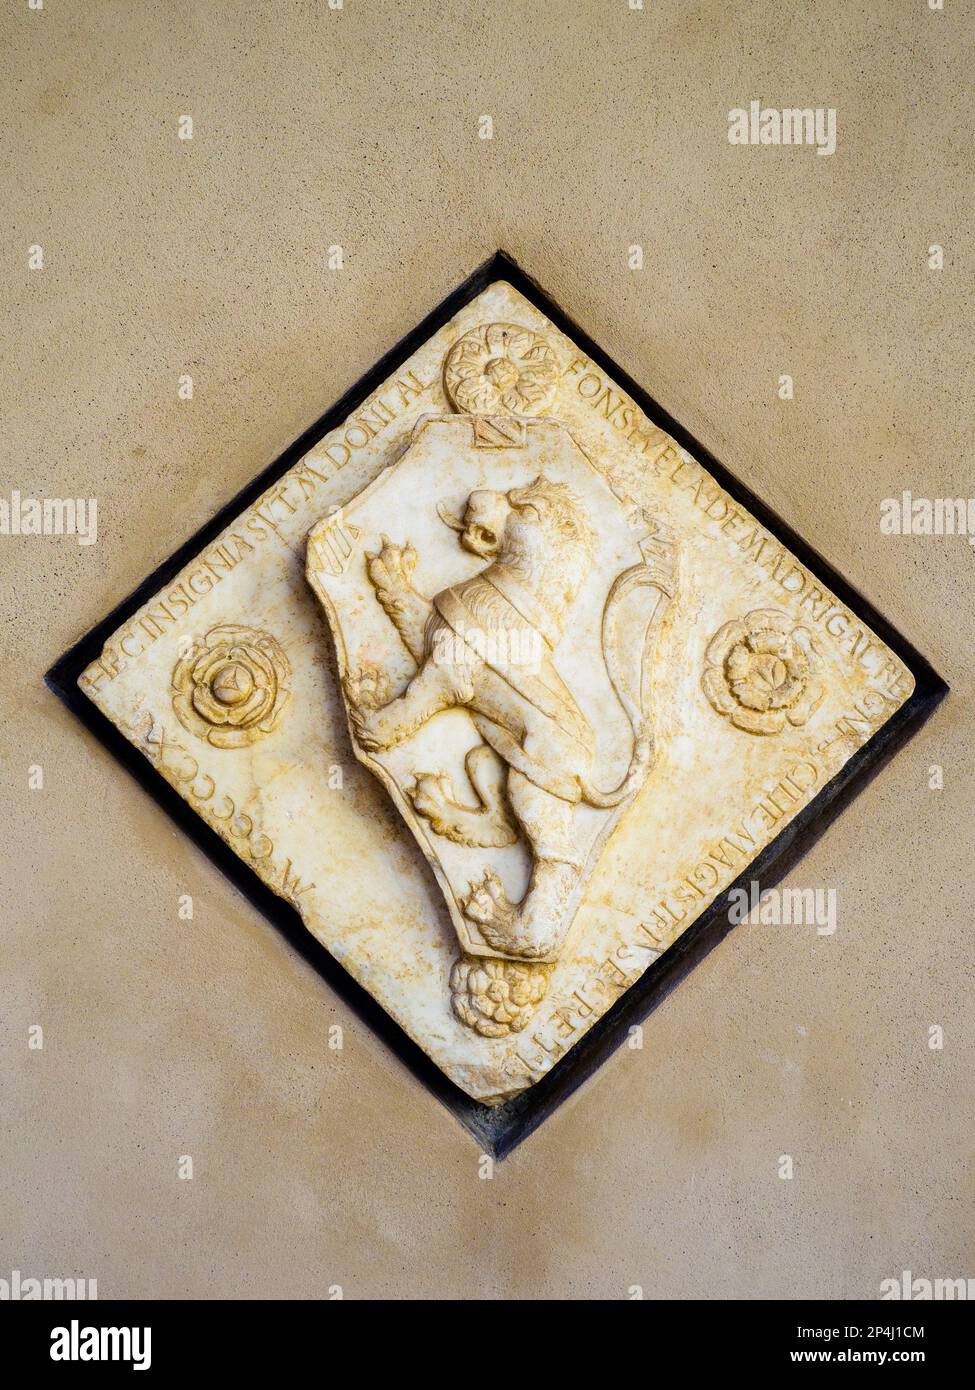 Das Wappen von Alfonso Vela von Madrigal, Sekretär des Königreichs Sizilien. Renaissance Art, 1510 - Kunstgalerie für die sizilianische Region im Palazzo Abatellis - Palermo, Sizilien, Italien Stockfoto